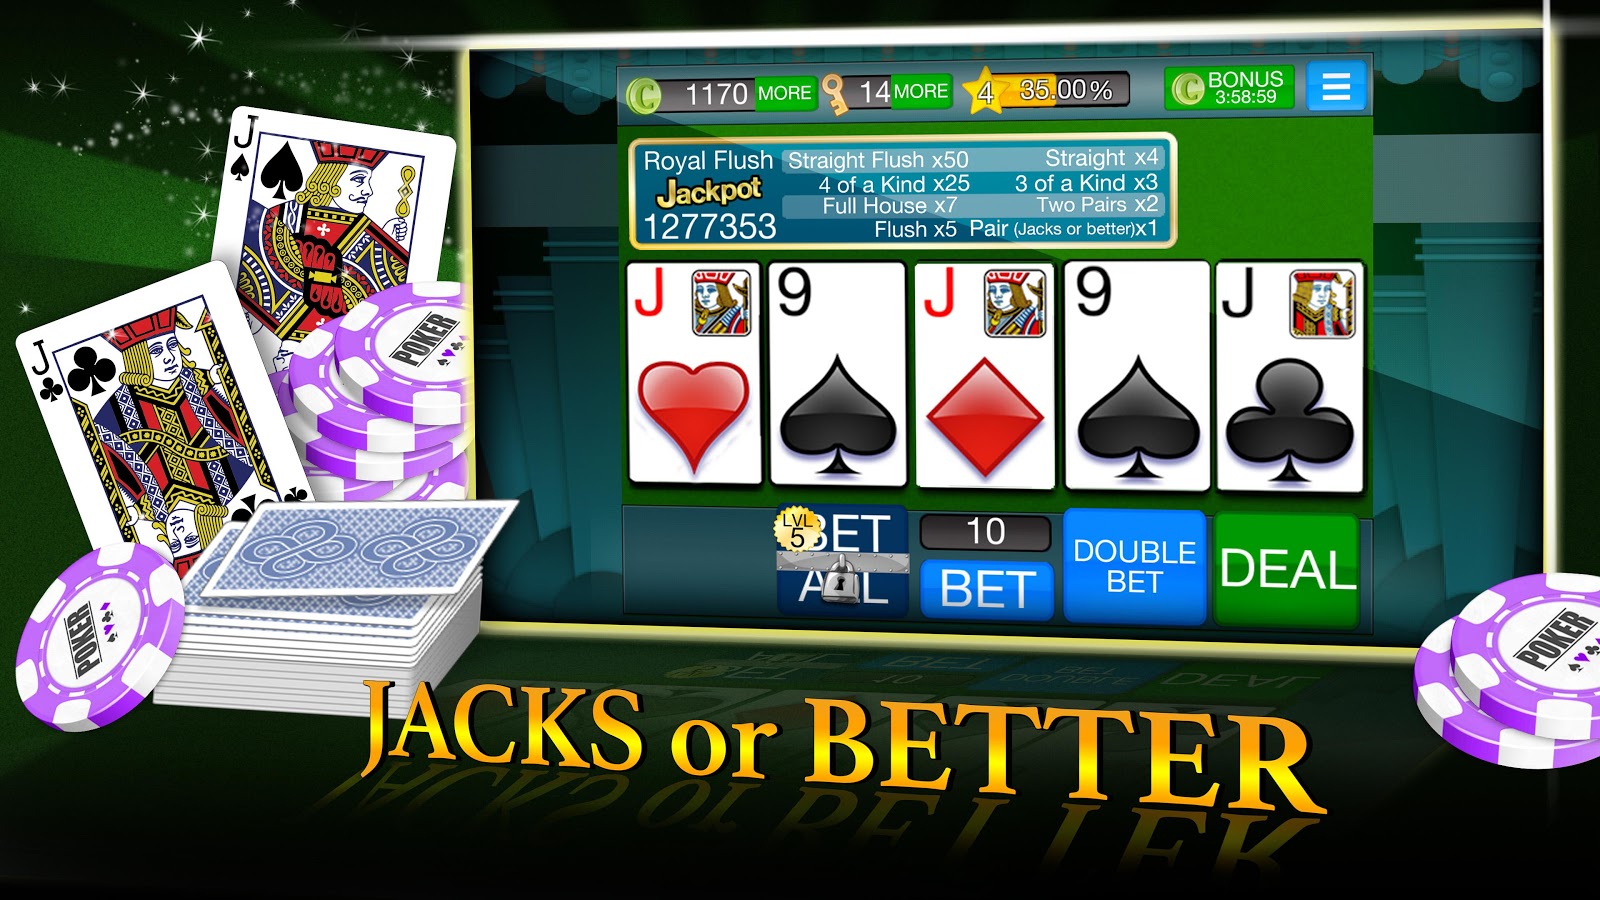 Jacks or better video poker real money